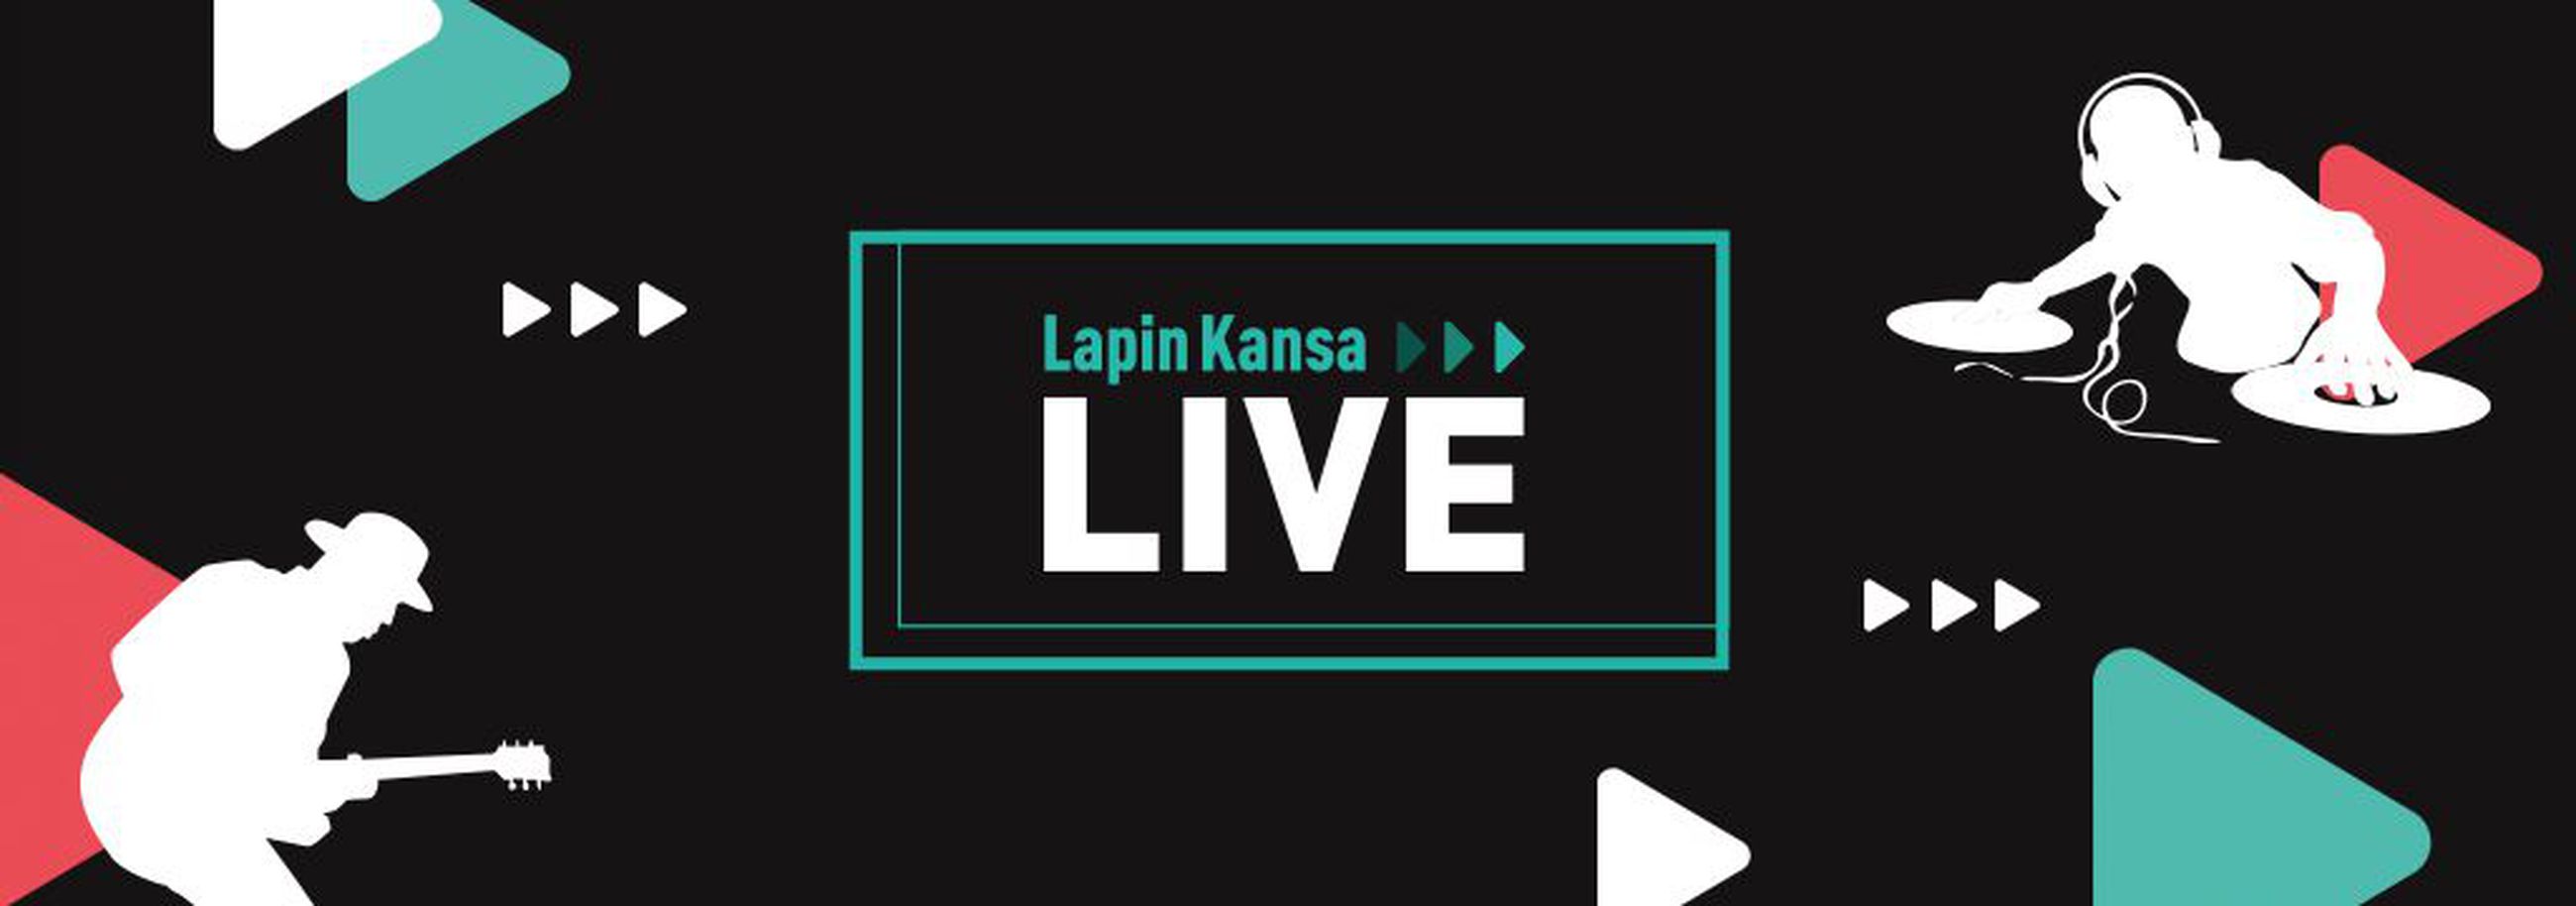 Lapin Kansa live